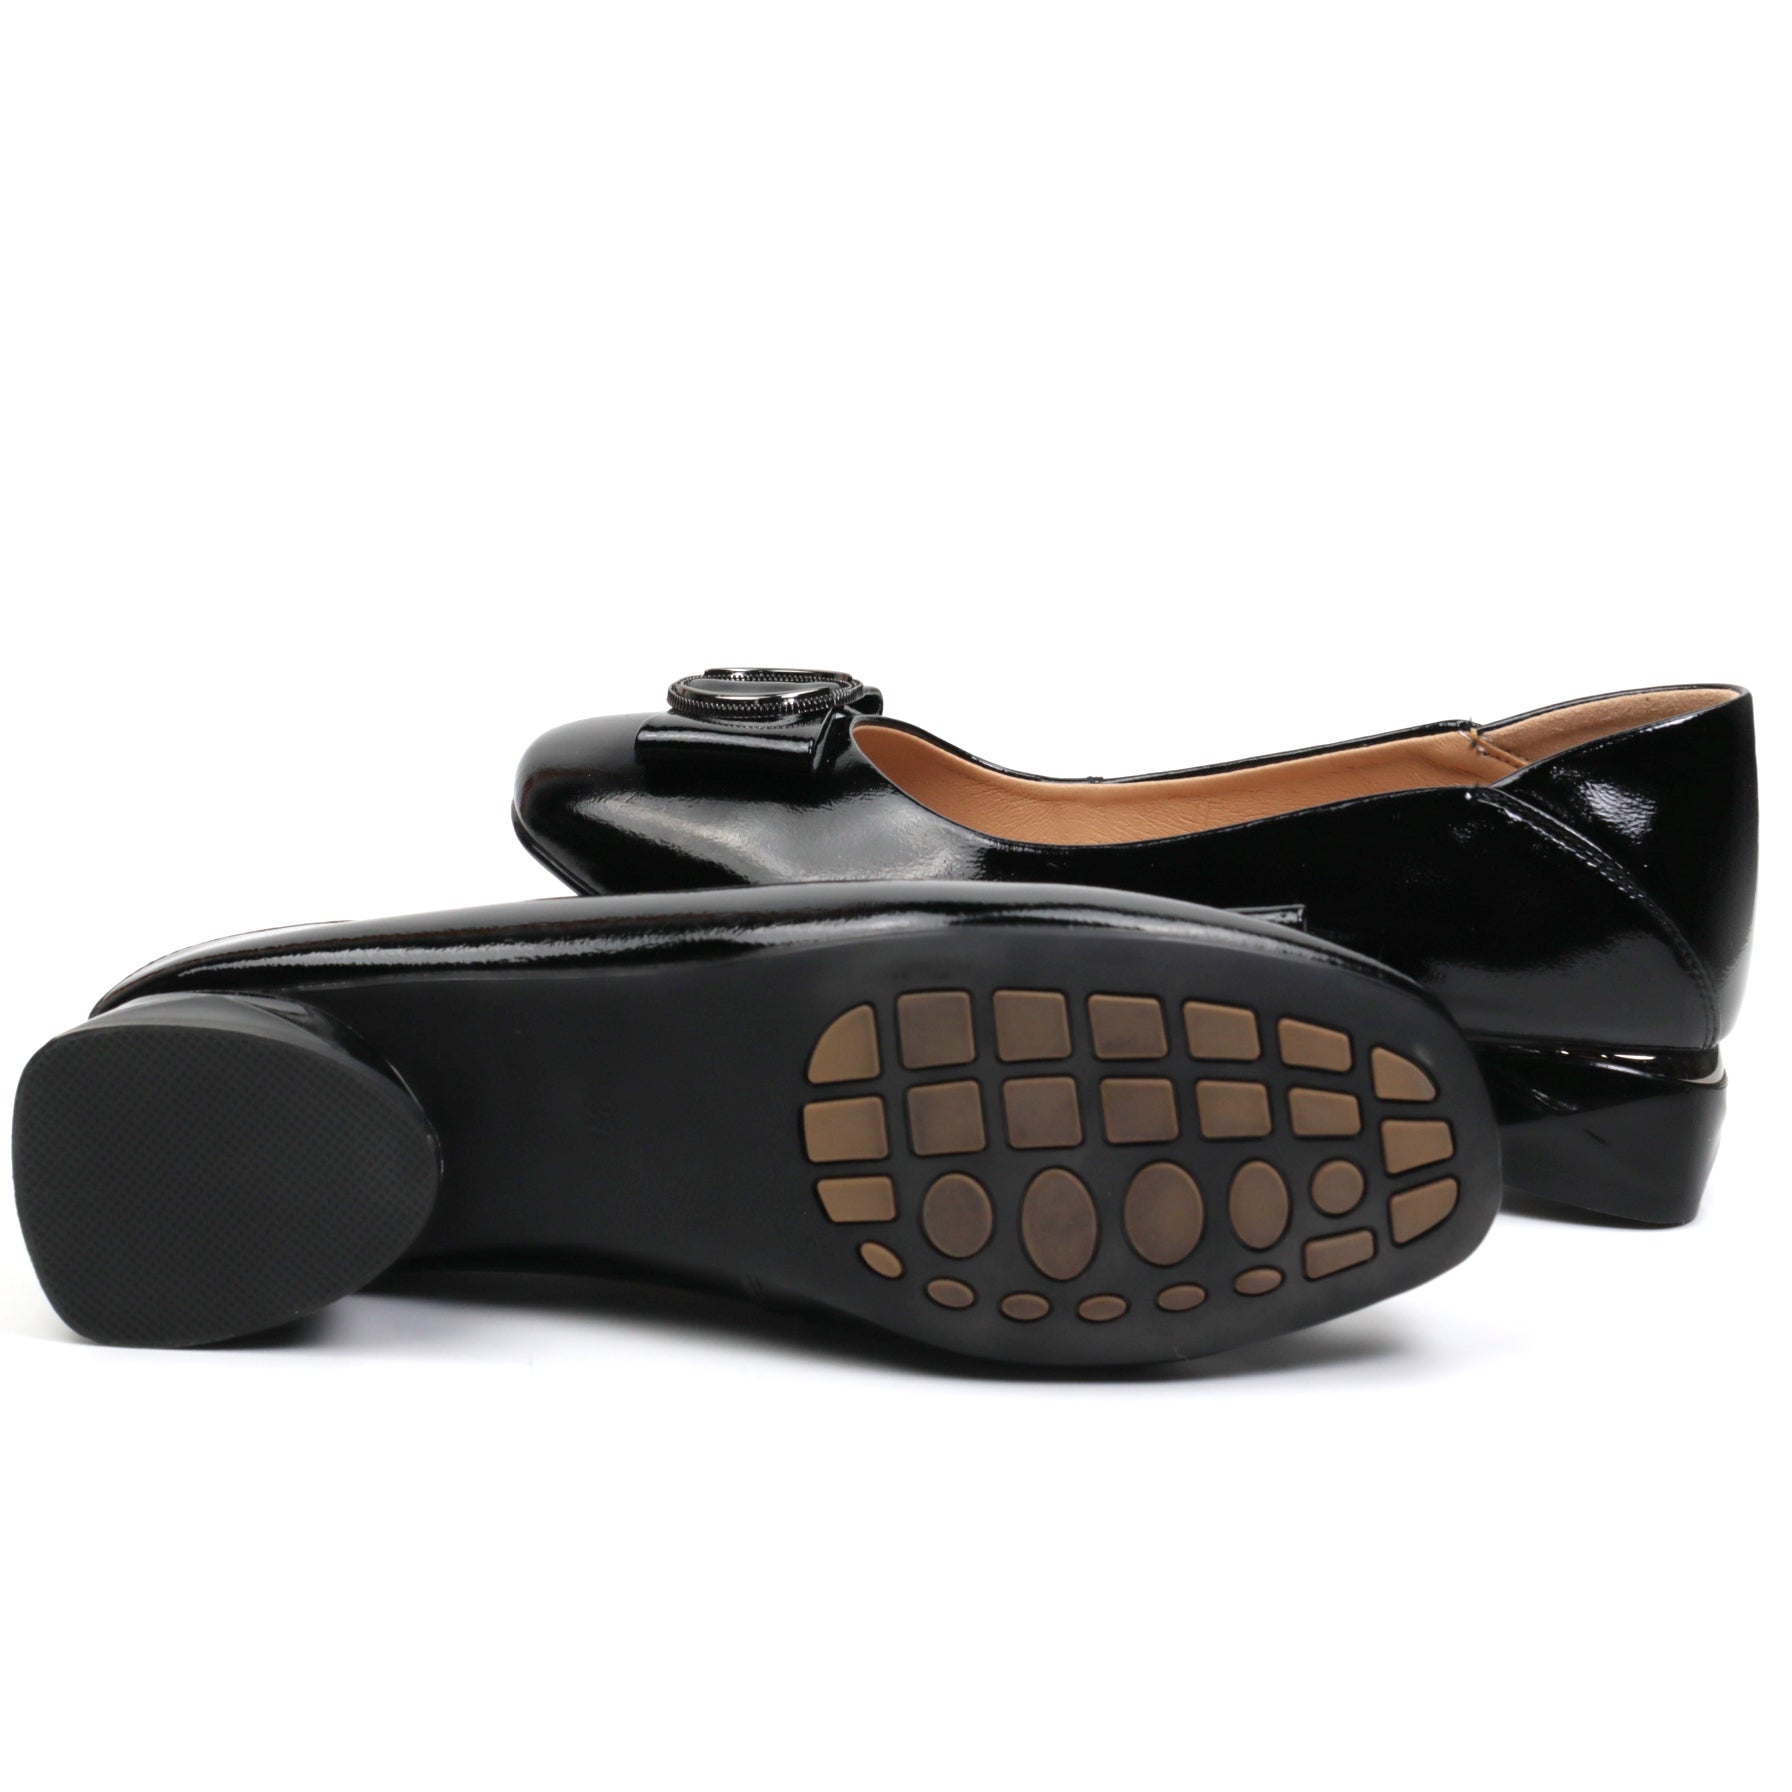 Pass Collection Pantofi dama M5M520012B 01 L negru lac ID3336-NGL